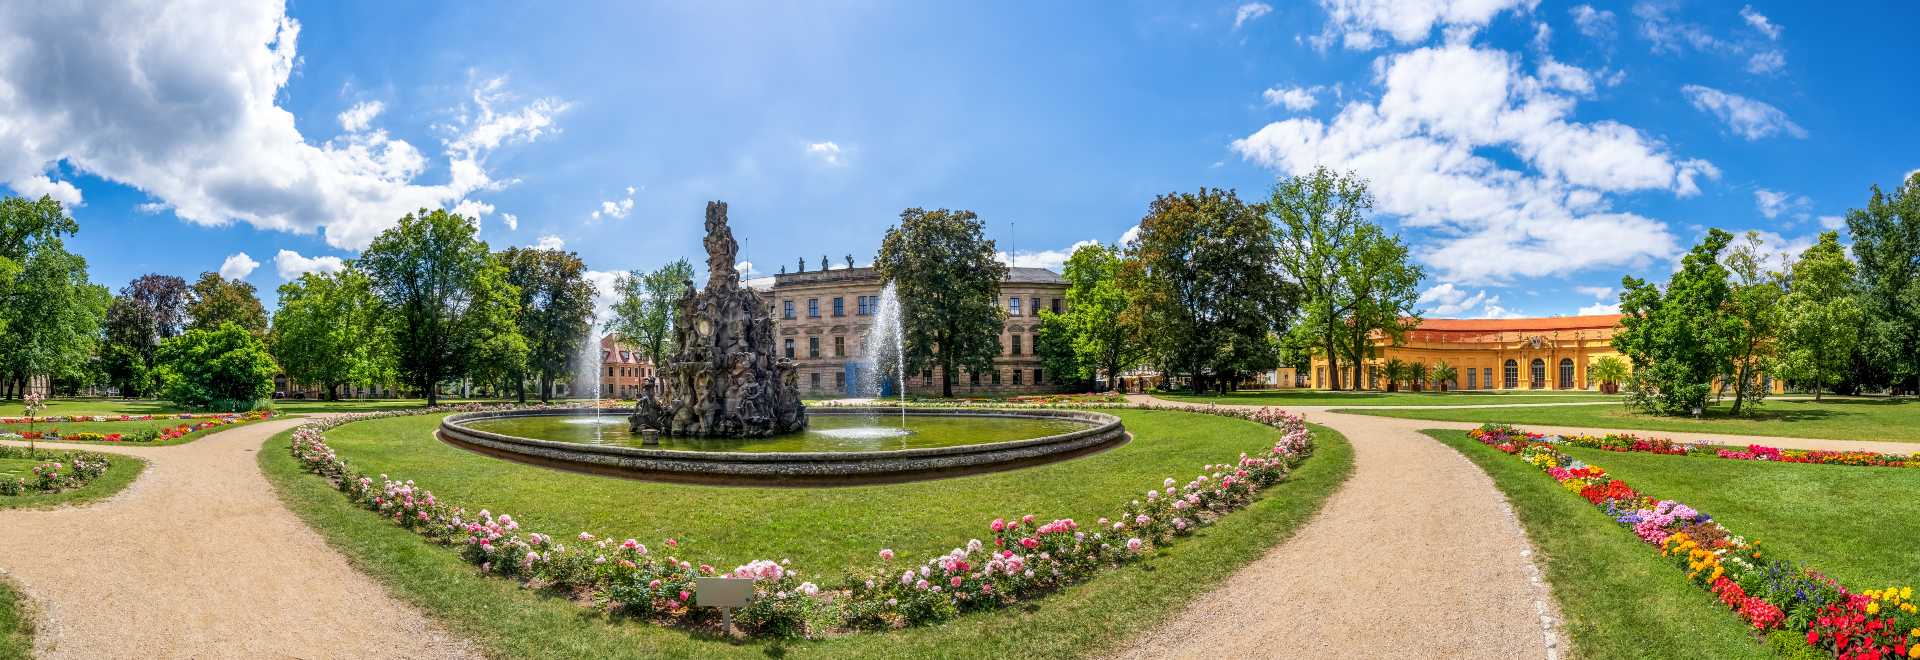 Schlossgarten mit Brunnen in Erlangen